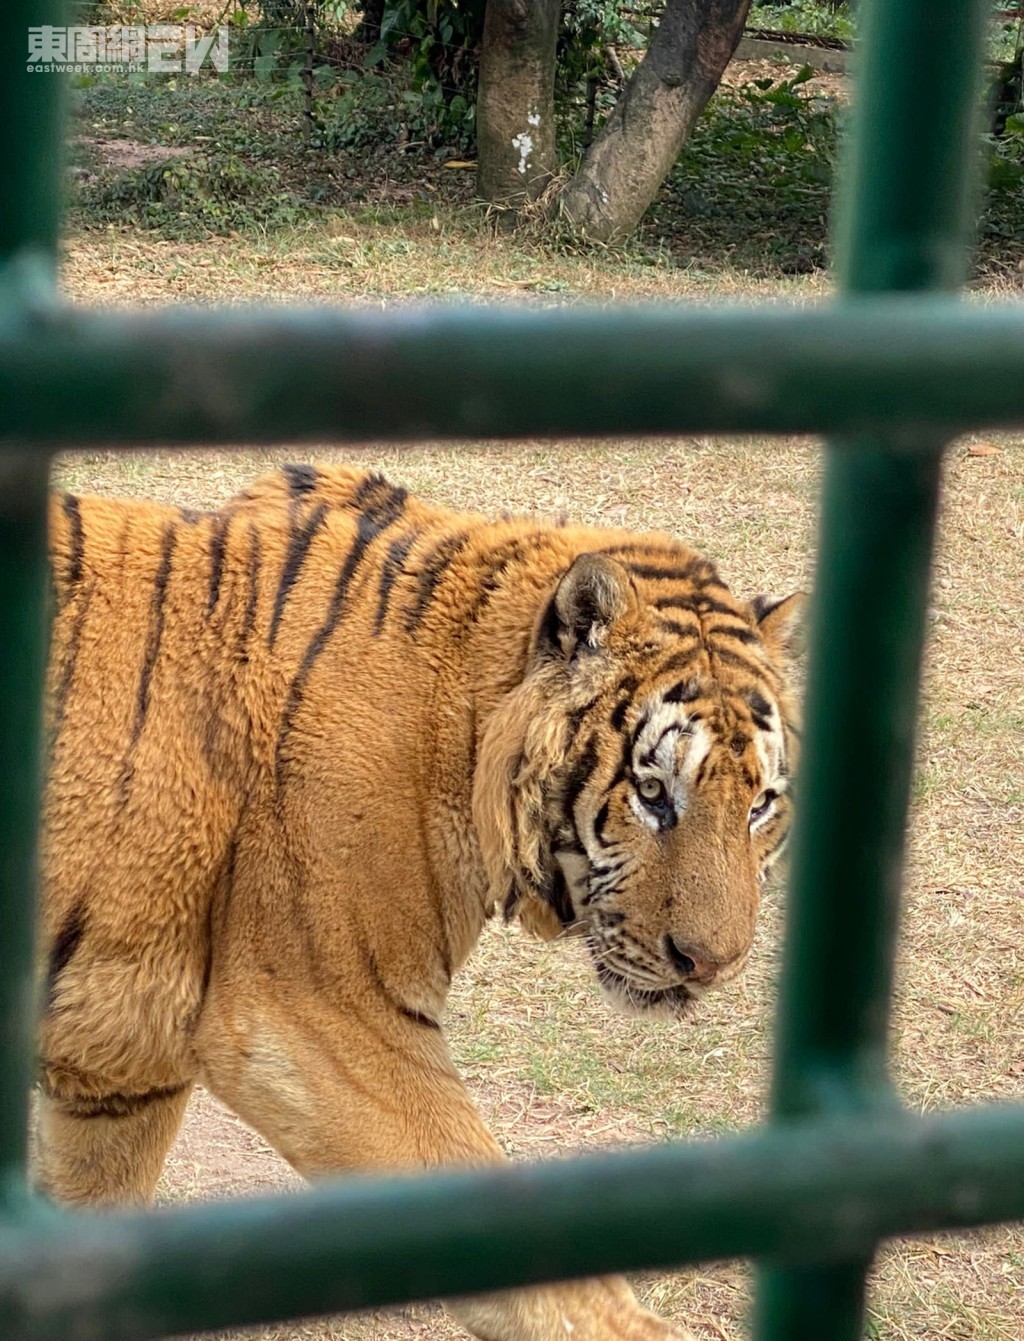 深圳野生動物園在1993年落成是一間放養式的動物園，園內的動物都可以在開闊的地方自由活動，整個園區約六十多萬平方米，劃分為三個園區：食草動物區、猛獸谷和表演區。